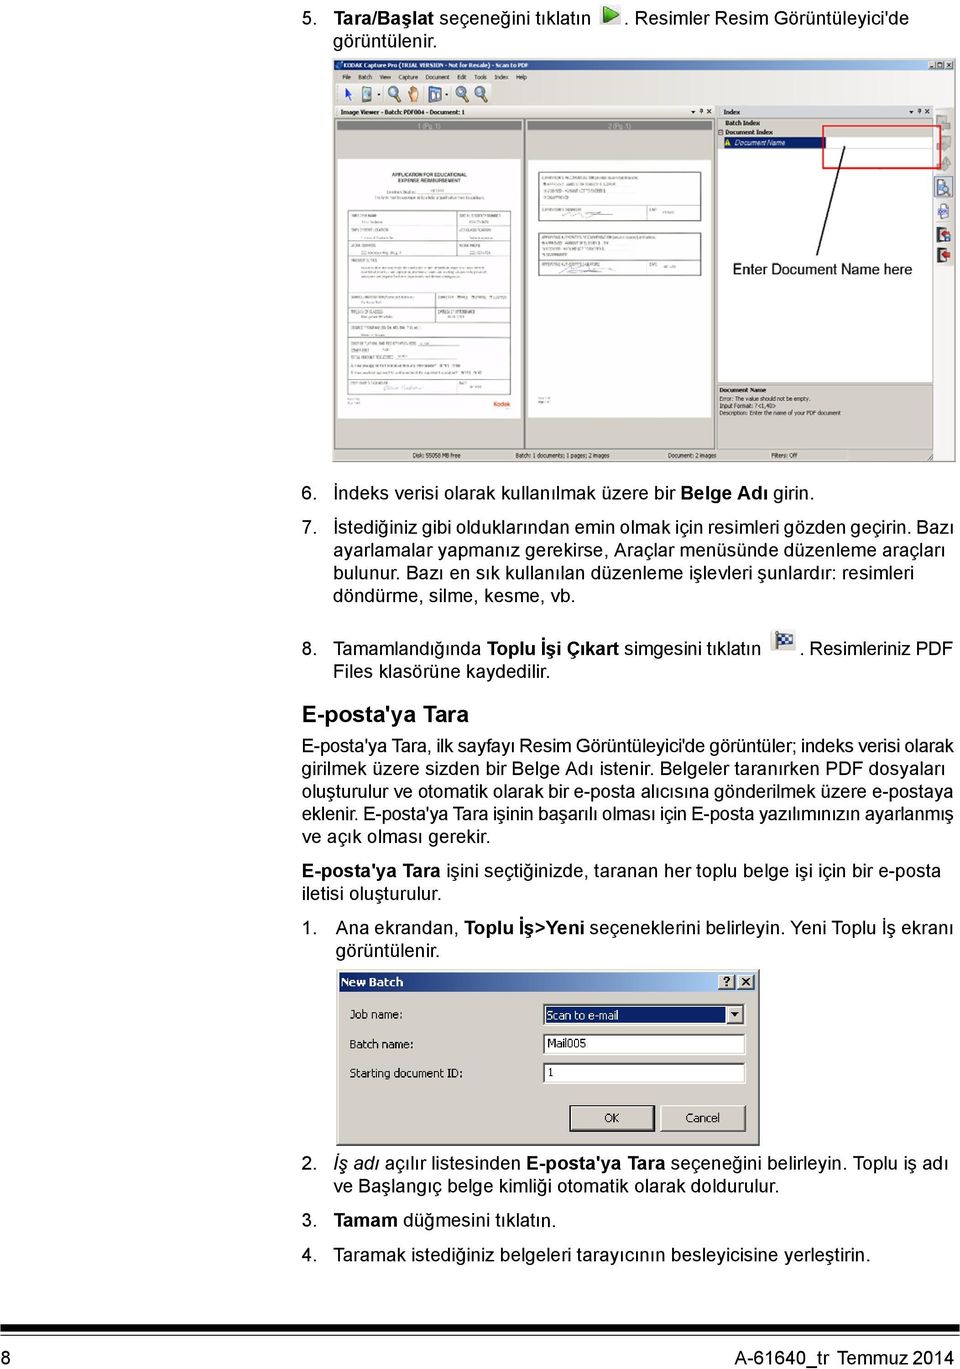 Bazı en sık kullanılan düzenleme işlevleri şunlardır: resimleri döndürme, silme, kesme, vb. 8. Tamamlandığında Toplu İşi Çıkart simgesini tıklatın. Resimleriniz PDF Files klasörüne kaydedilir.